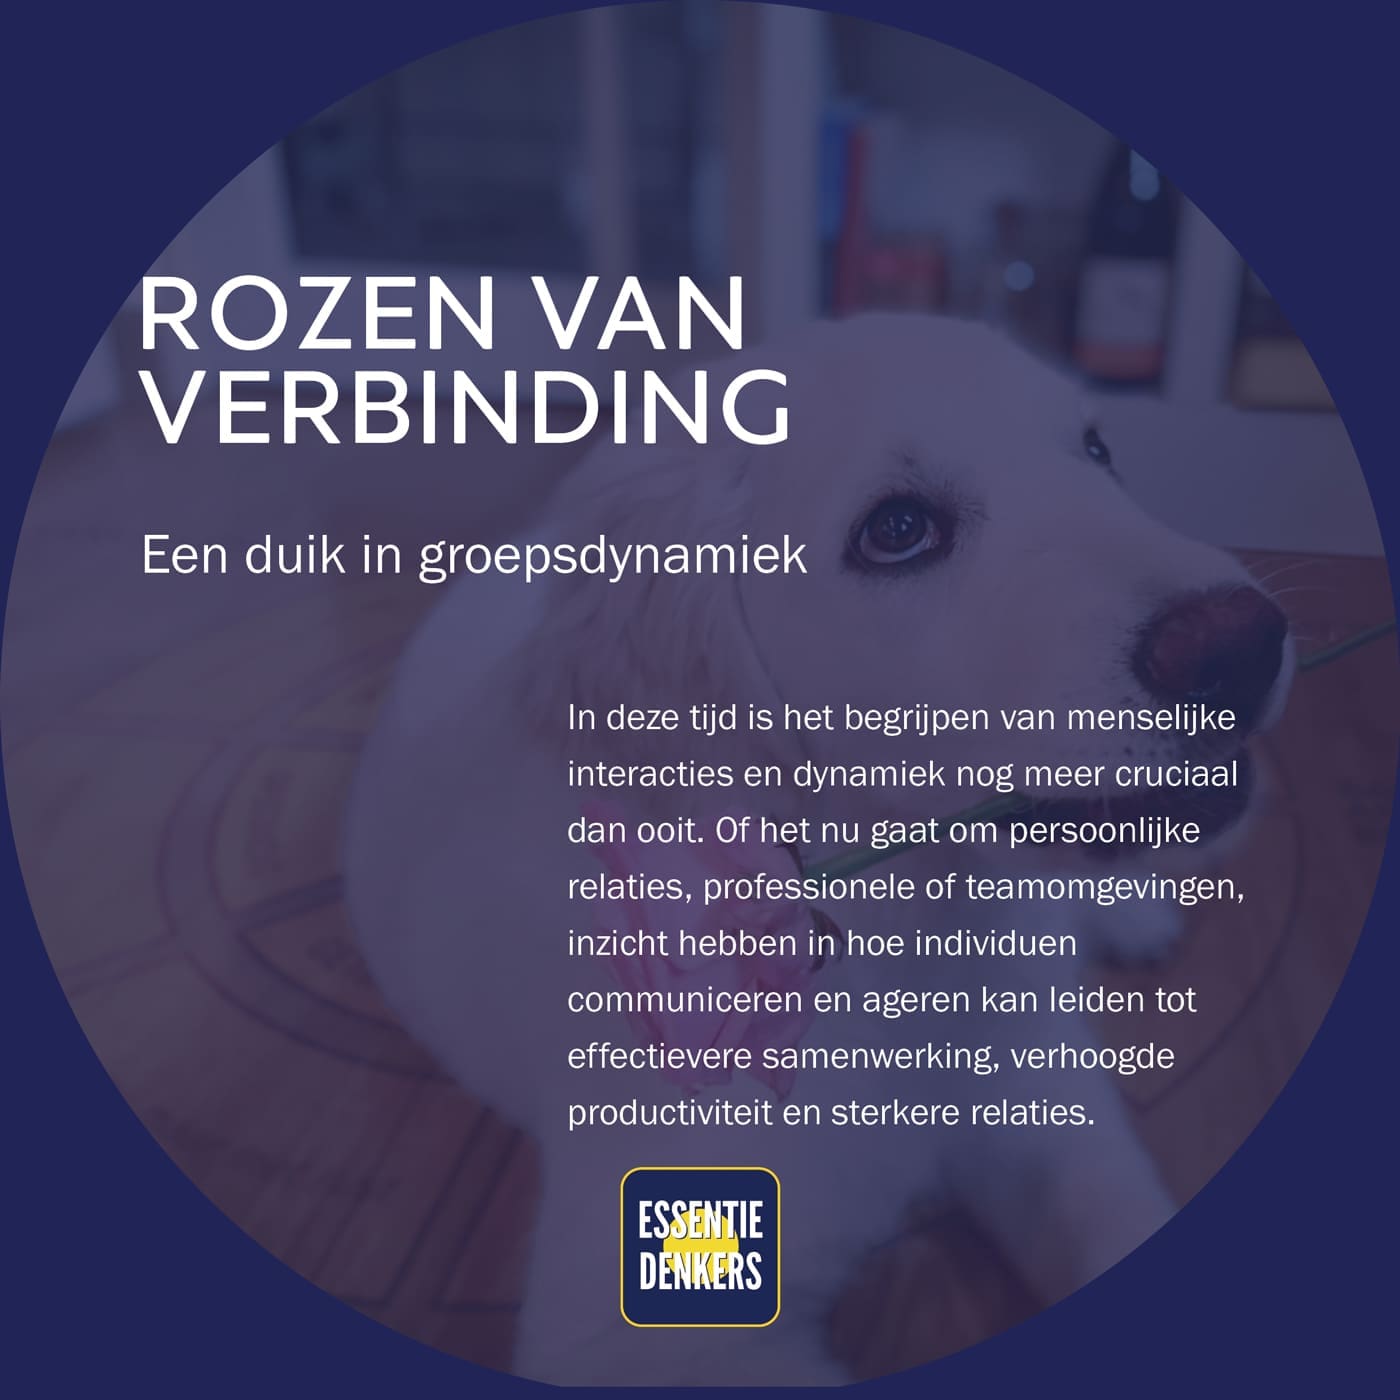 Featured image for “Rozen van verbinding”